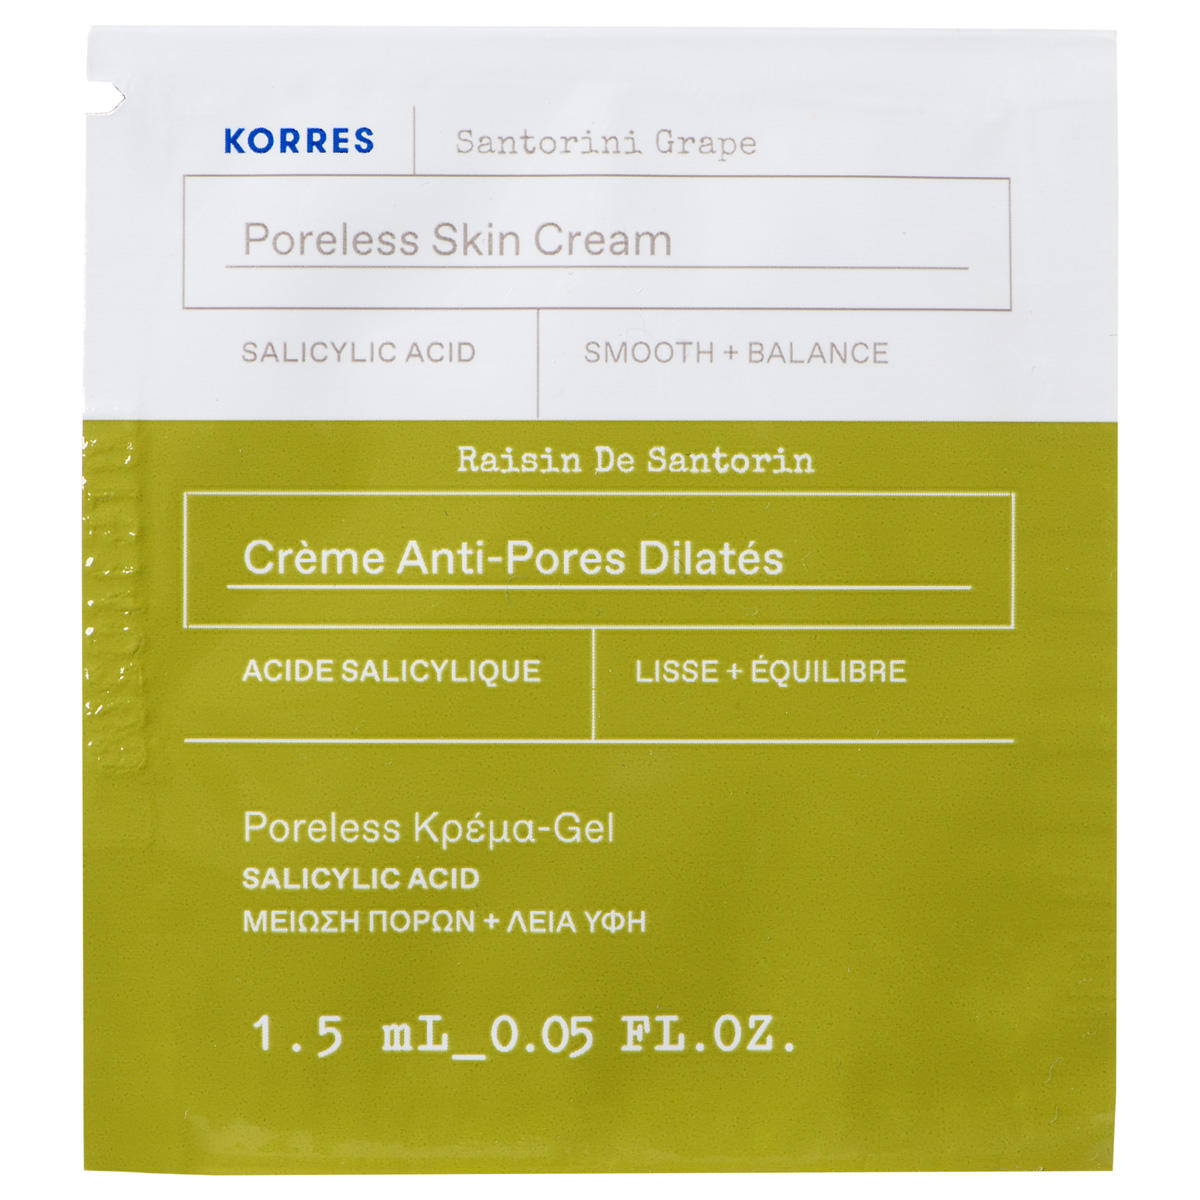 KORRES Santorini Grape Poreless Skin Cream 1.5 ml 